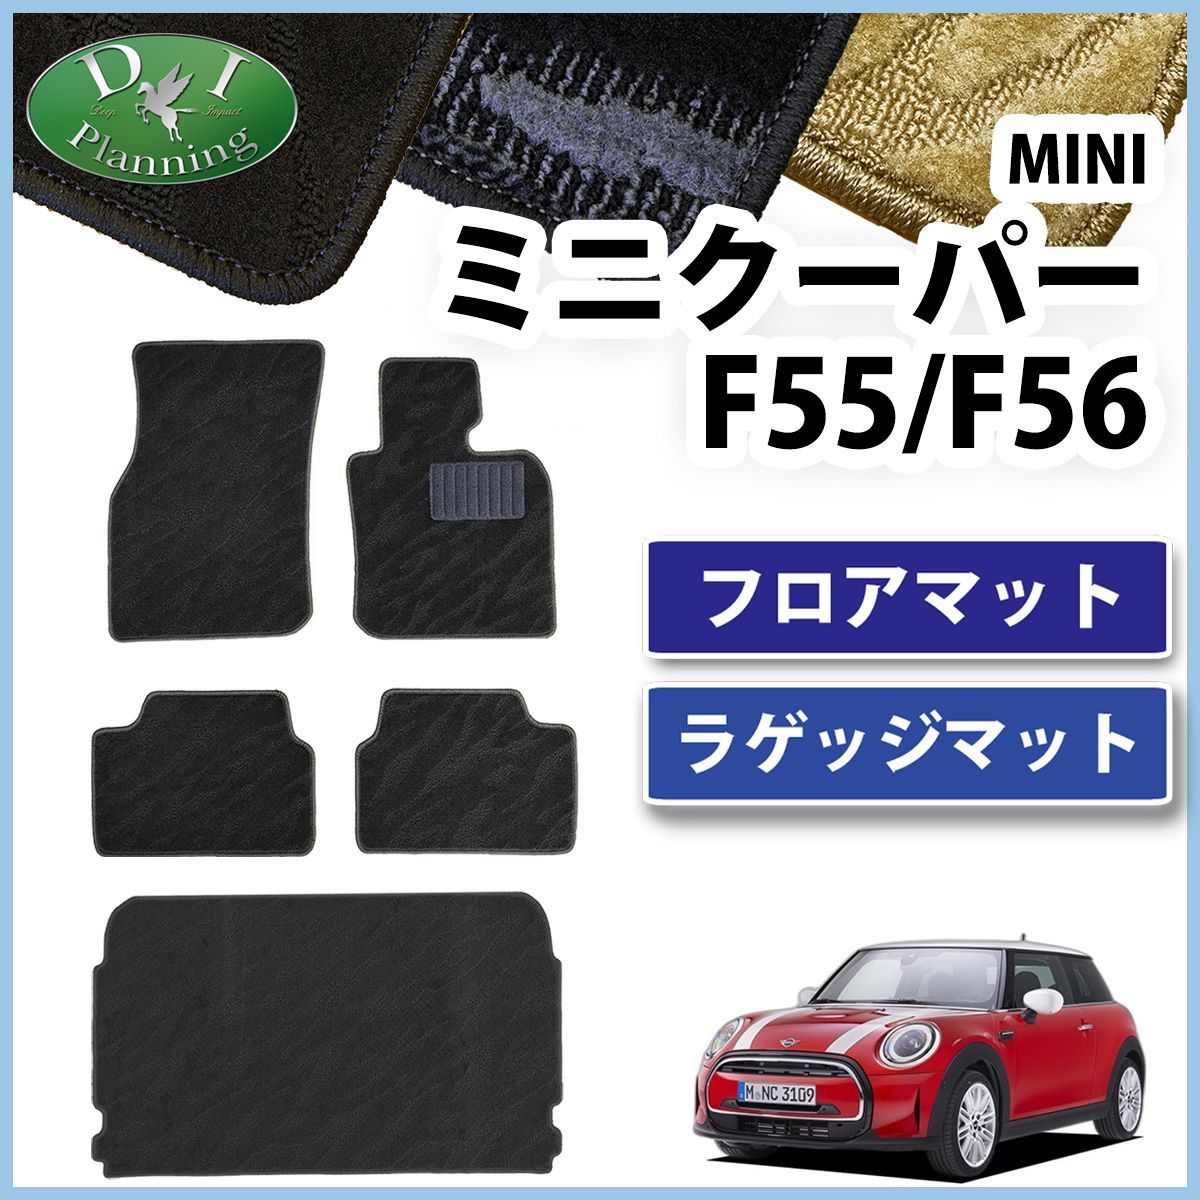 MINI ミニクーパー F55 5ドア車 フロアマット  ラゲッジマット セット 織柄シリーズ 社外新品 カー用品のDIプランニング メルカリ